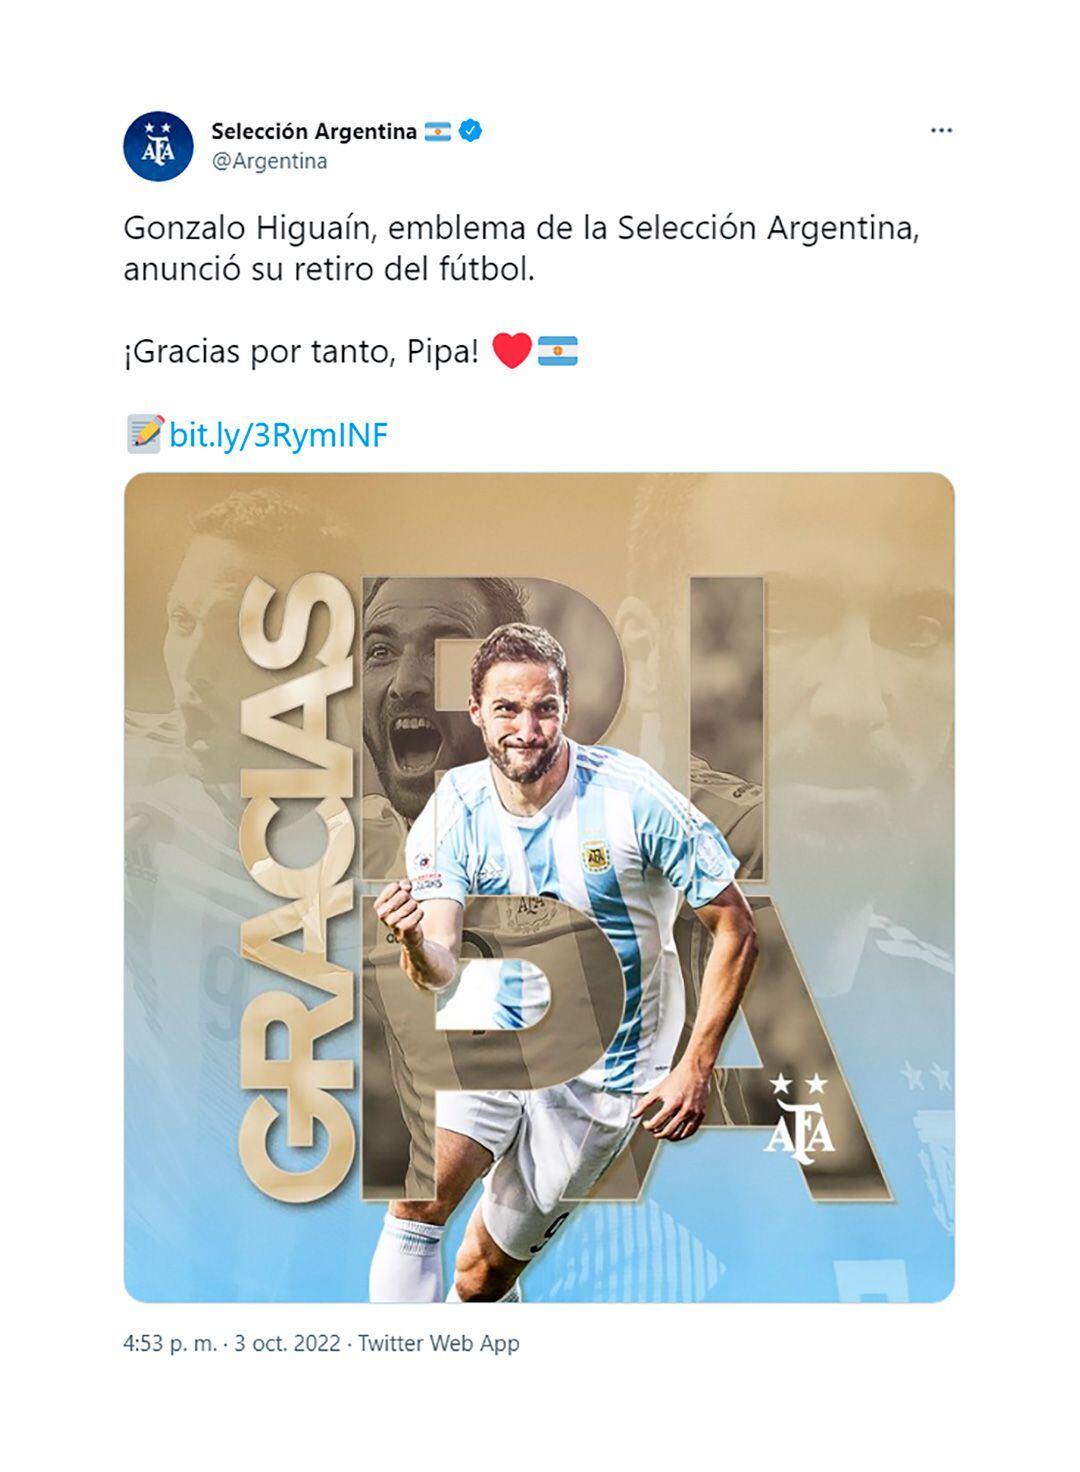 Retiro Higuaín: Mensaje de la Selección Argentina